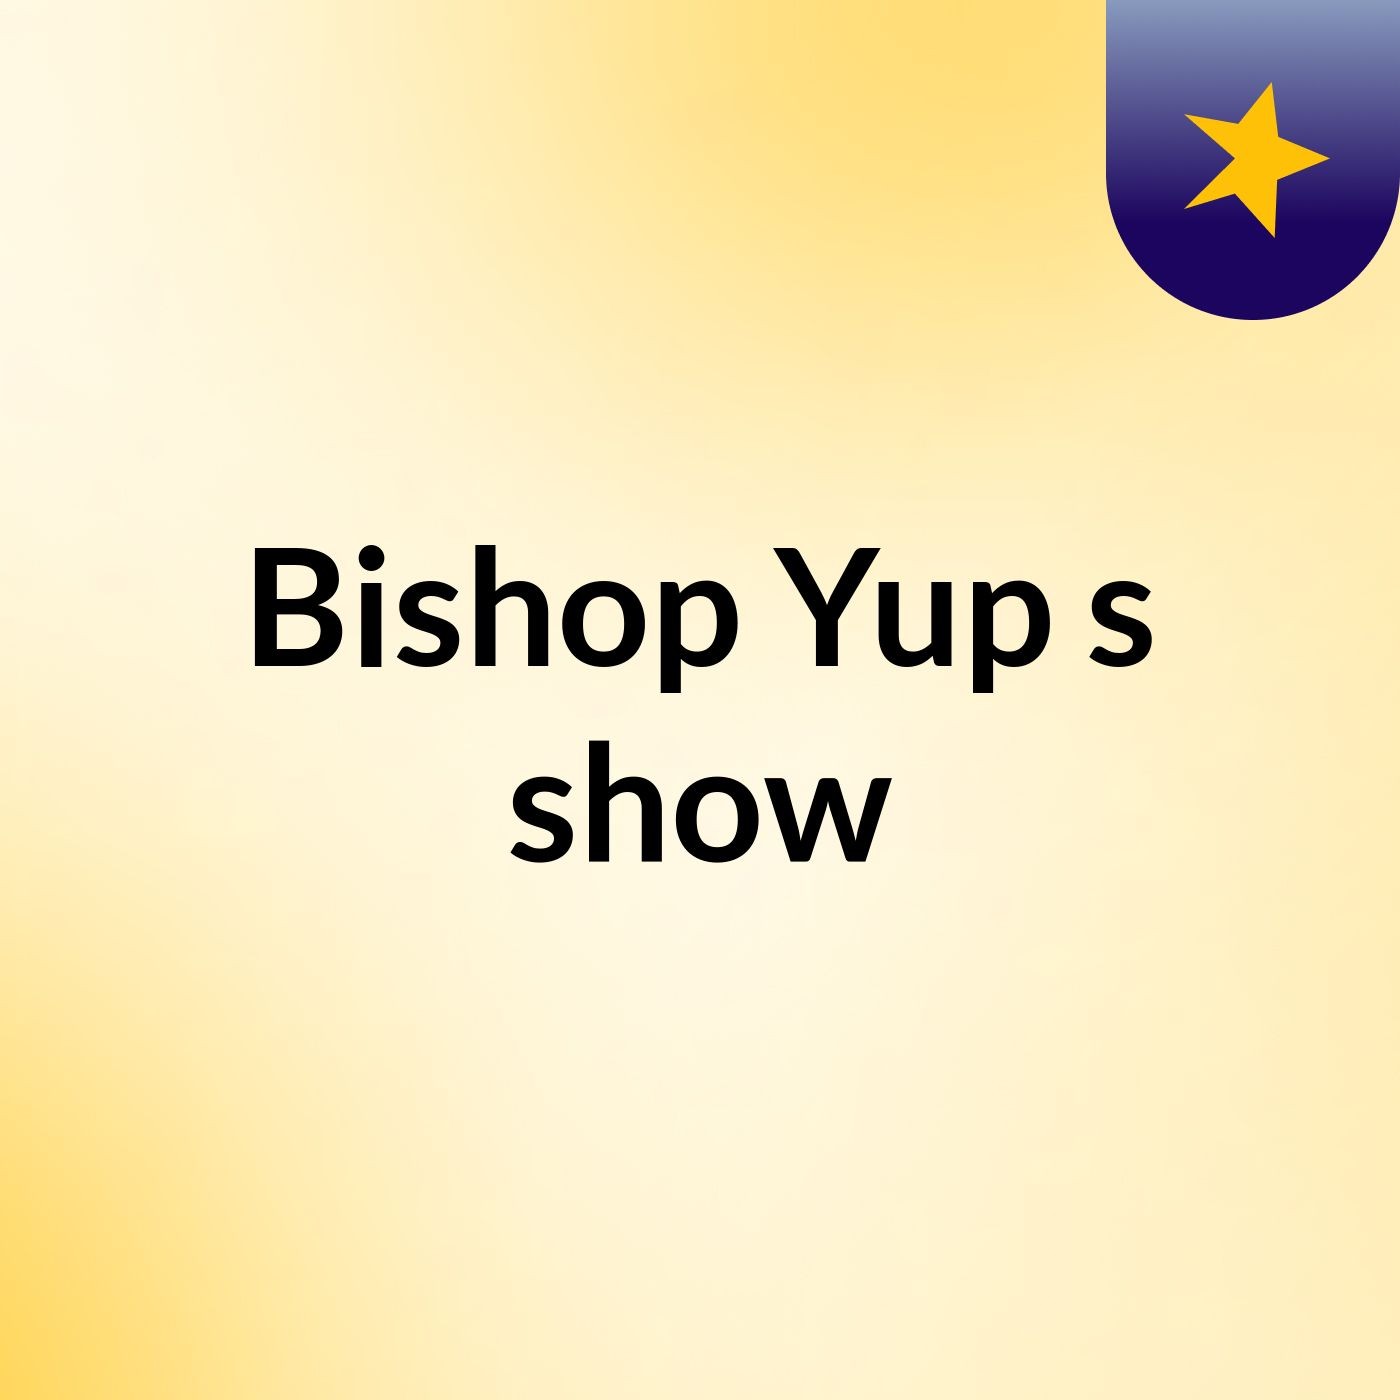 Episode 3 - Bishop Yup's show